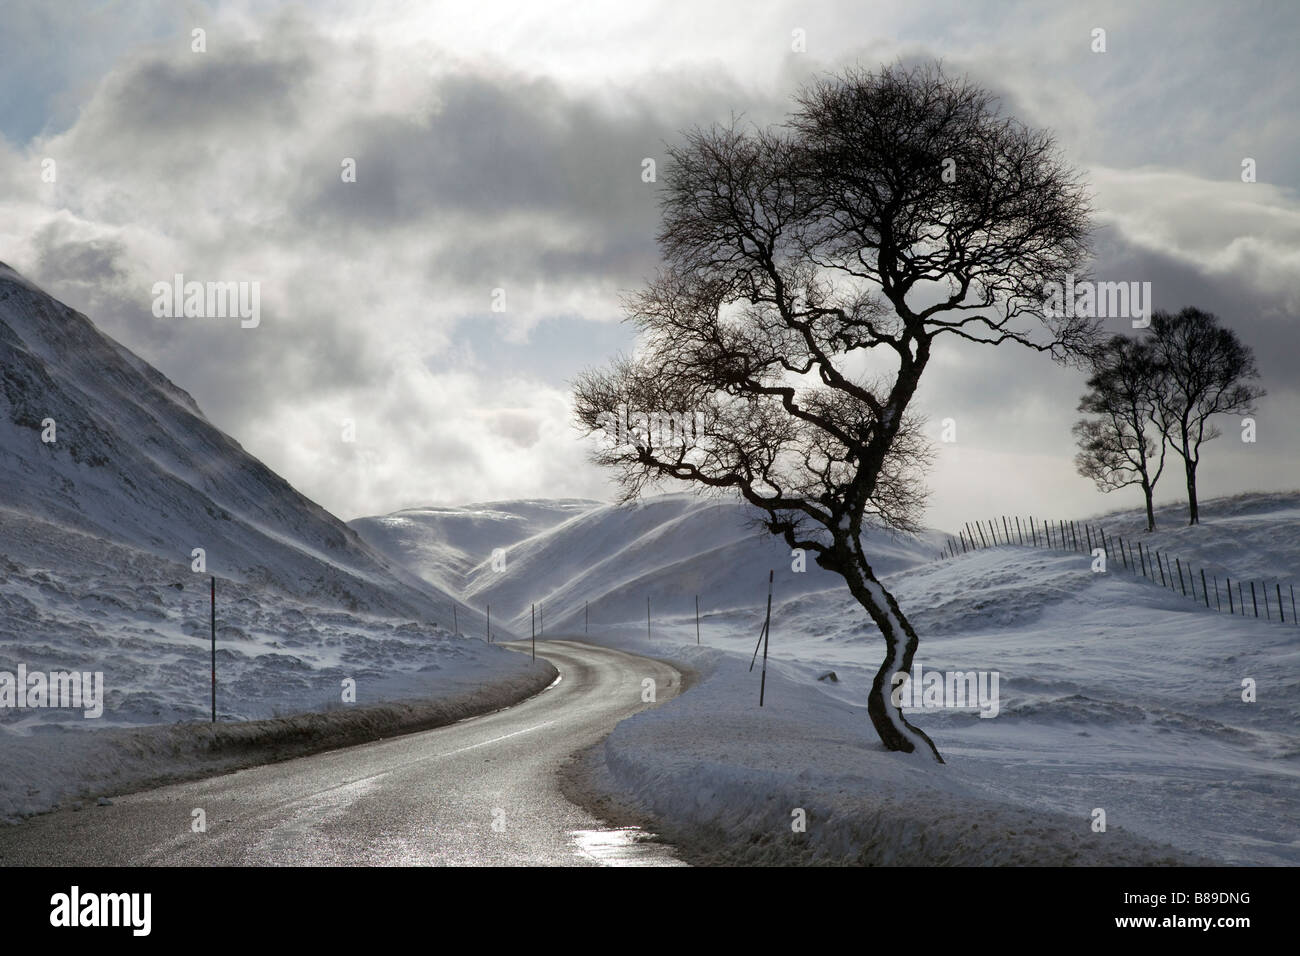 Carreteras de invierno escocesas, ascenso a la zona de esquí de Glenshee, Cairnwell Pass en la A93 entre Glenshee y Braemar, Parque Nacional Cairngorms, Escocia, Reino Unido Foto de stock